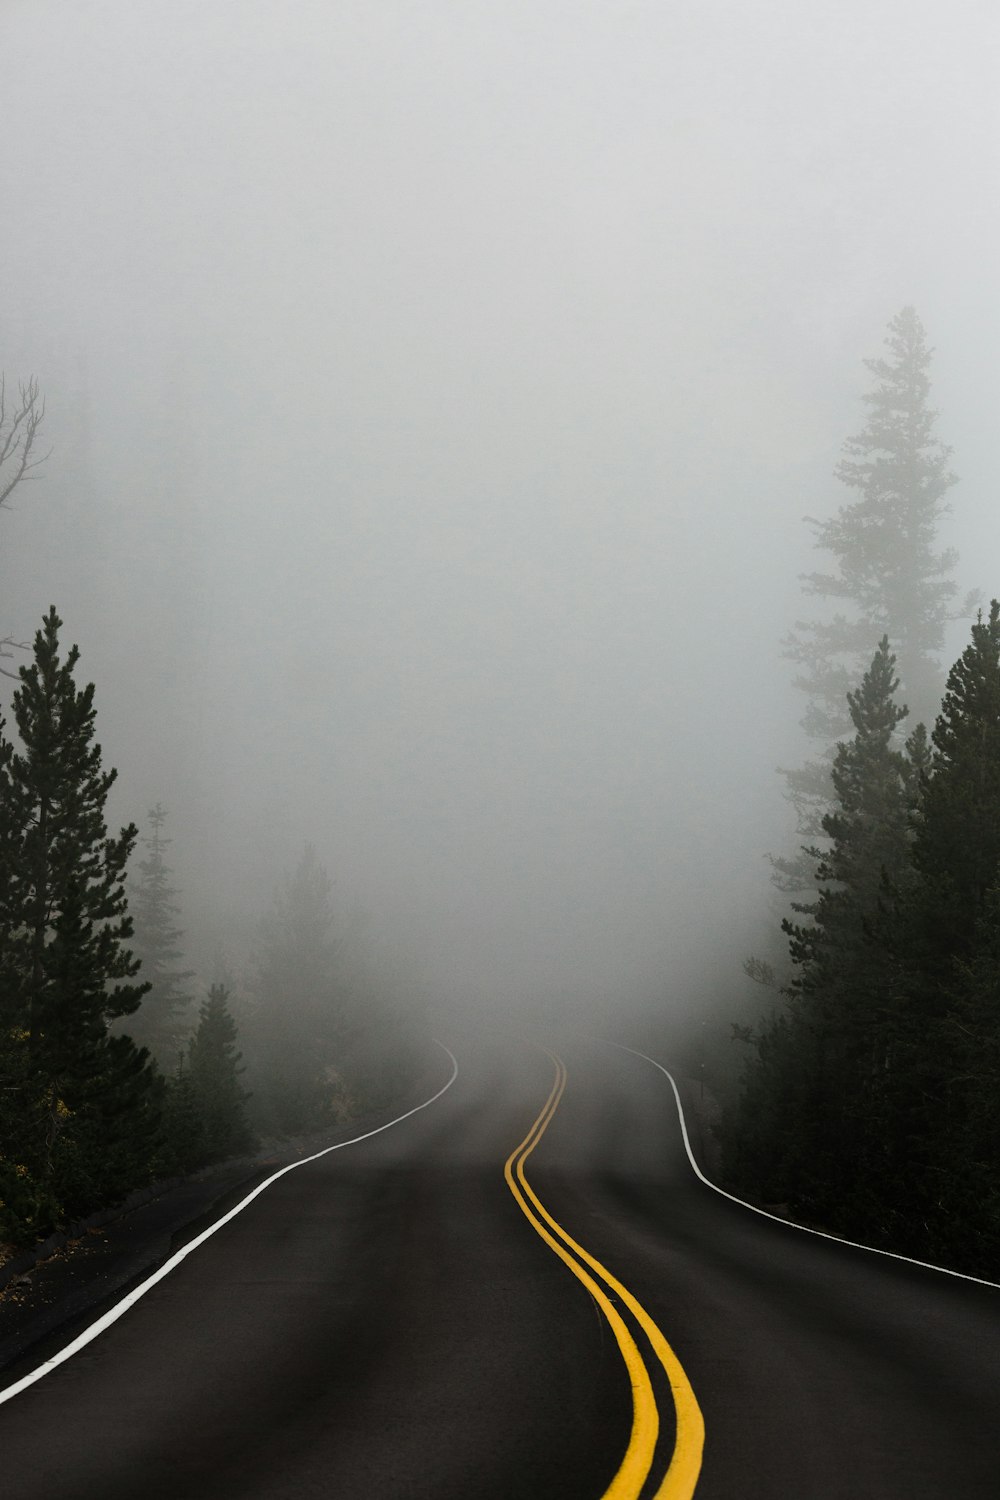 Carretera vacía rodeada de árboles con niebla